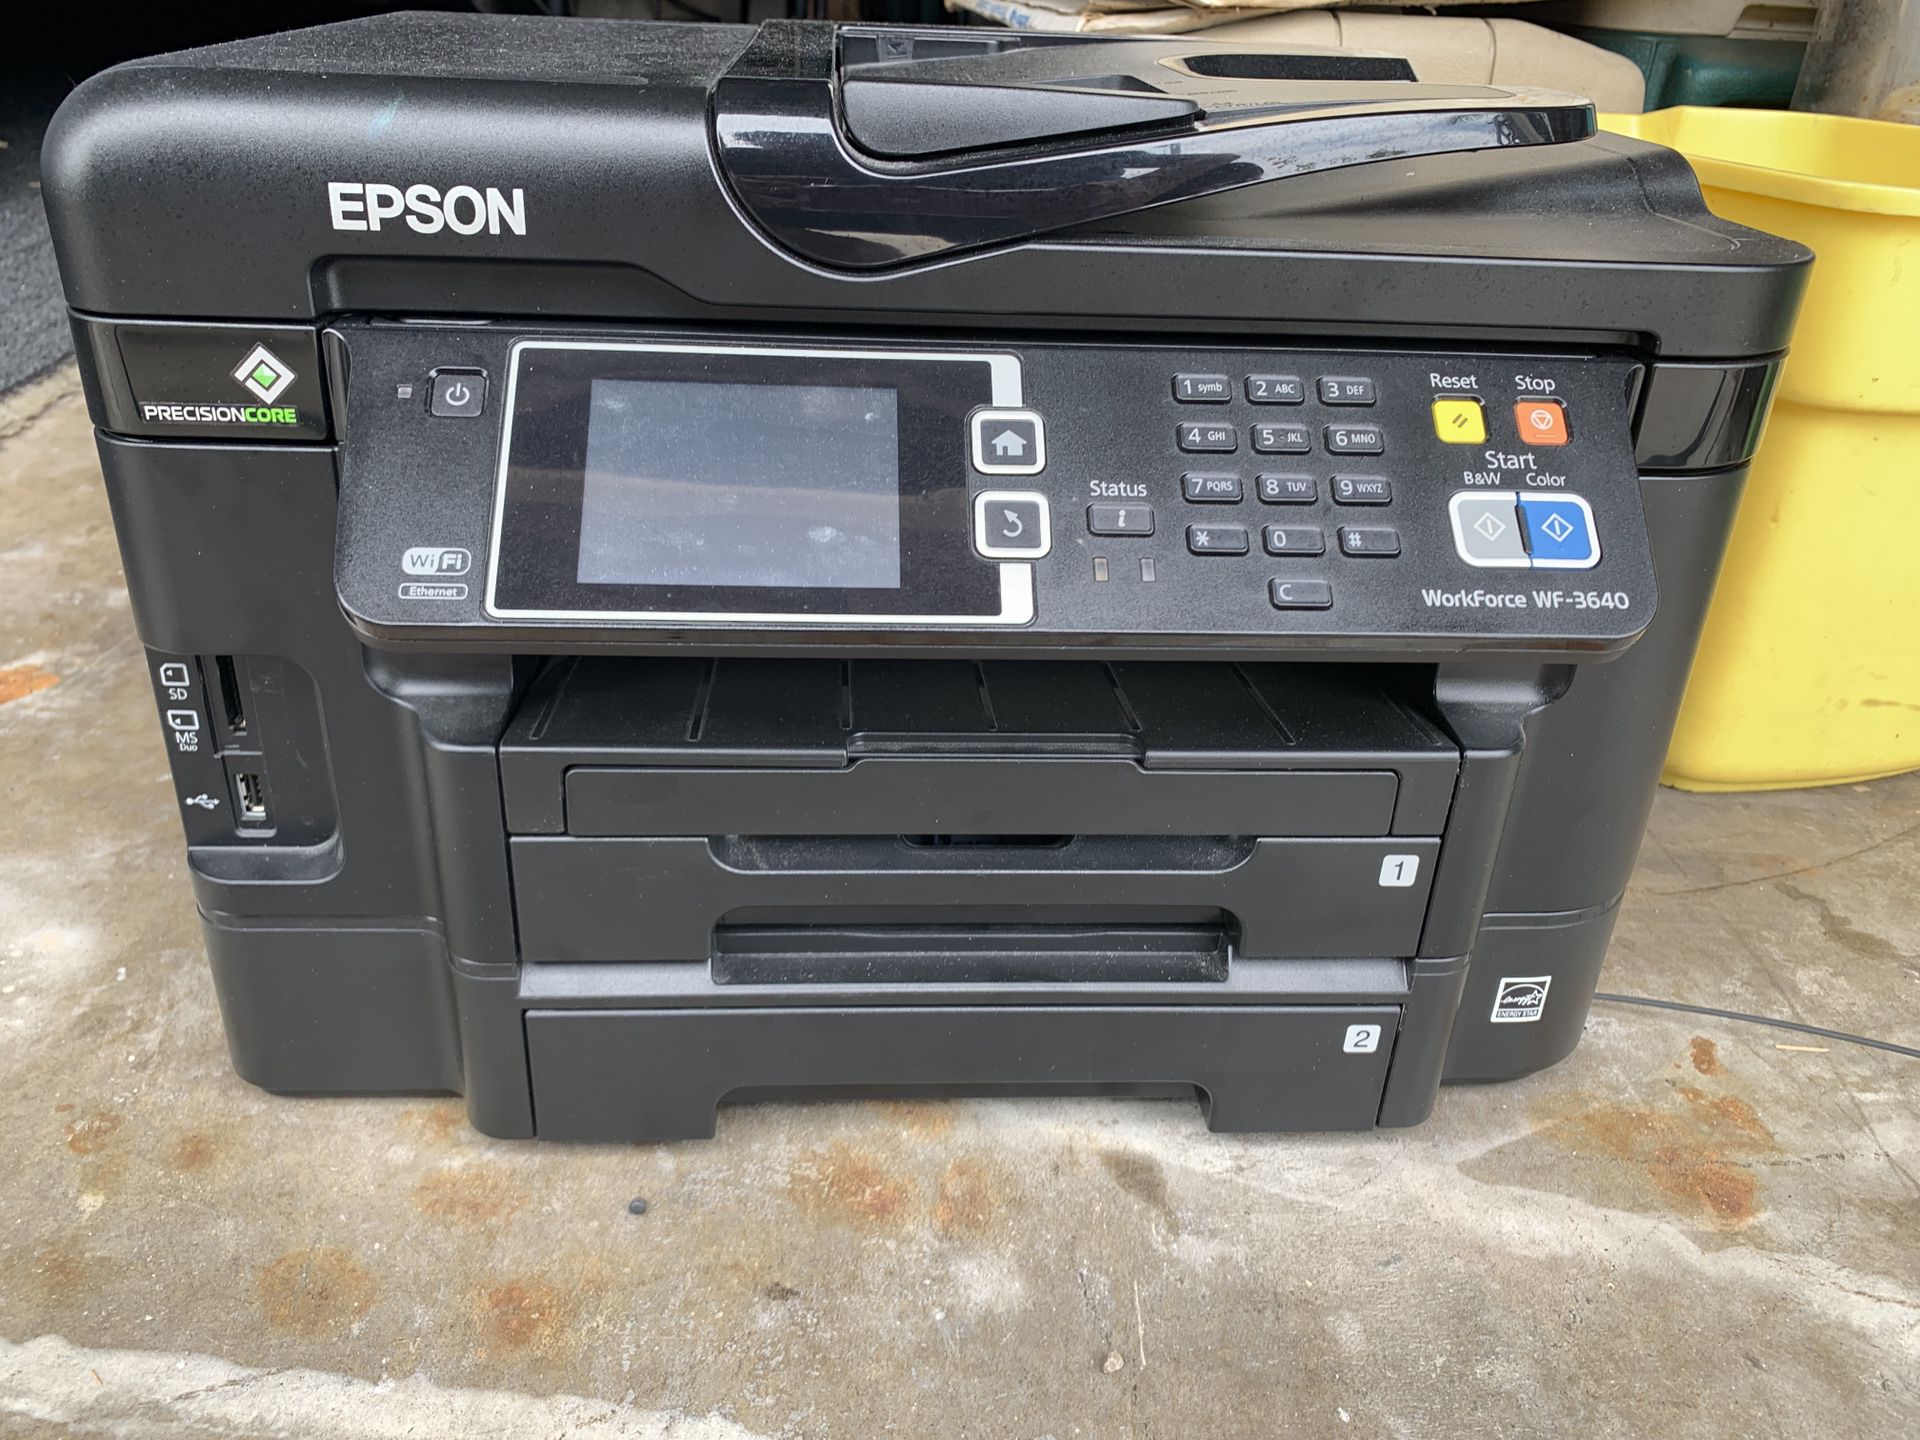 Epson Workforce Wf 3640 All In One Printerscannerfax For Sale In Orange Ca Offerup 2062